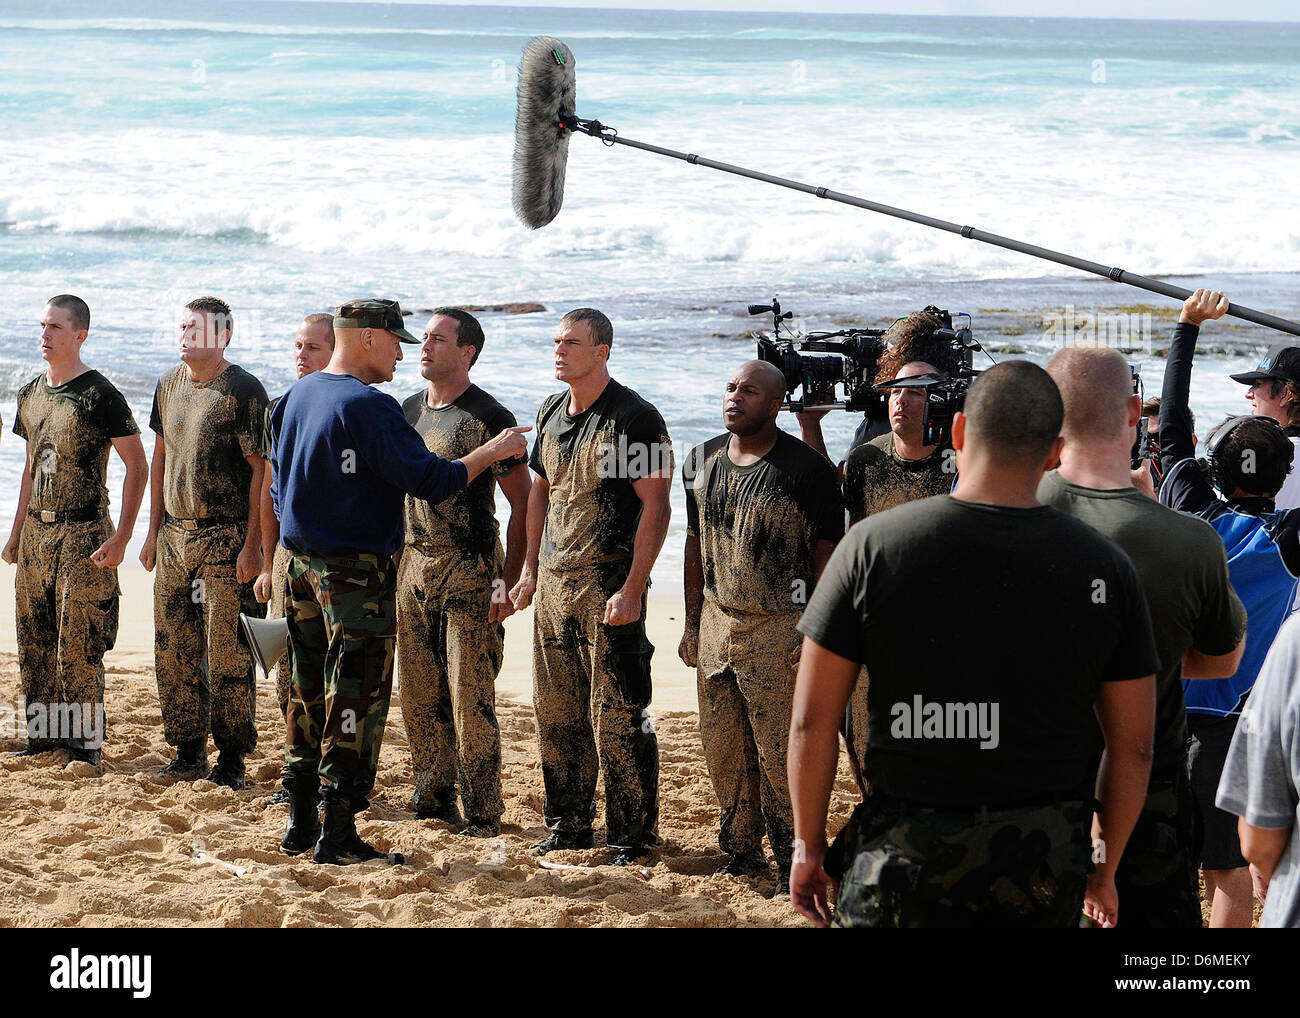 Attori Alex O'Loughlin, Alan Ritchson e Terry O'Quinn lungo con marinai da base comune perla Harbor-Hickam simulare Navy SEALS formazione durante le riprese della serie televisiva della CBS Hawaii Five-0 Marzo 1, 2013 in Haleiwa, Hawaii. Foto Stock